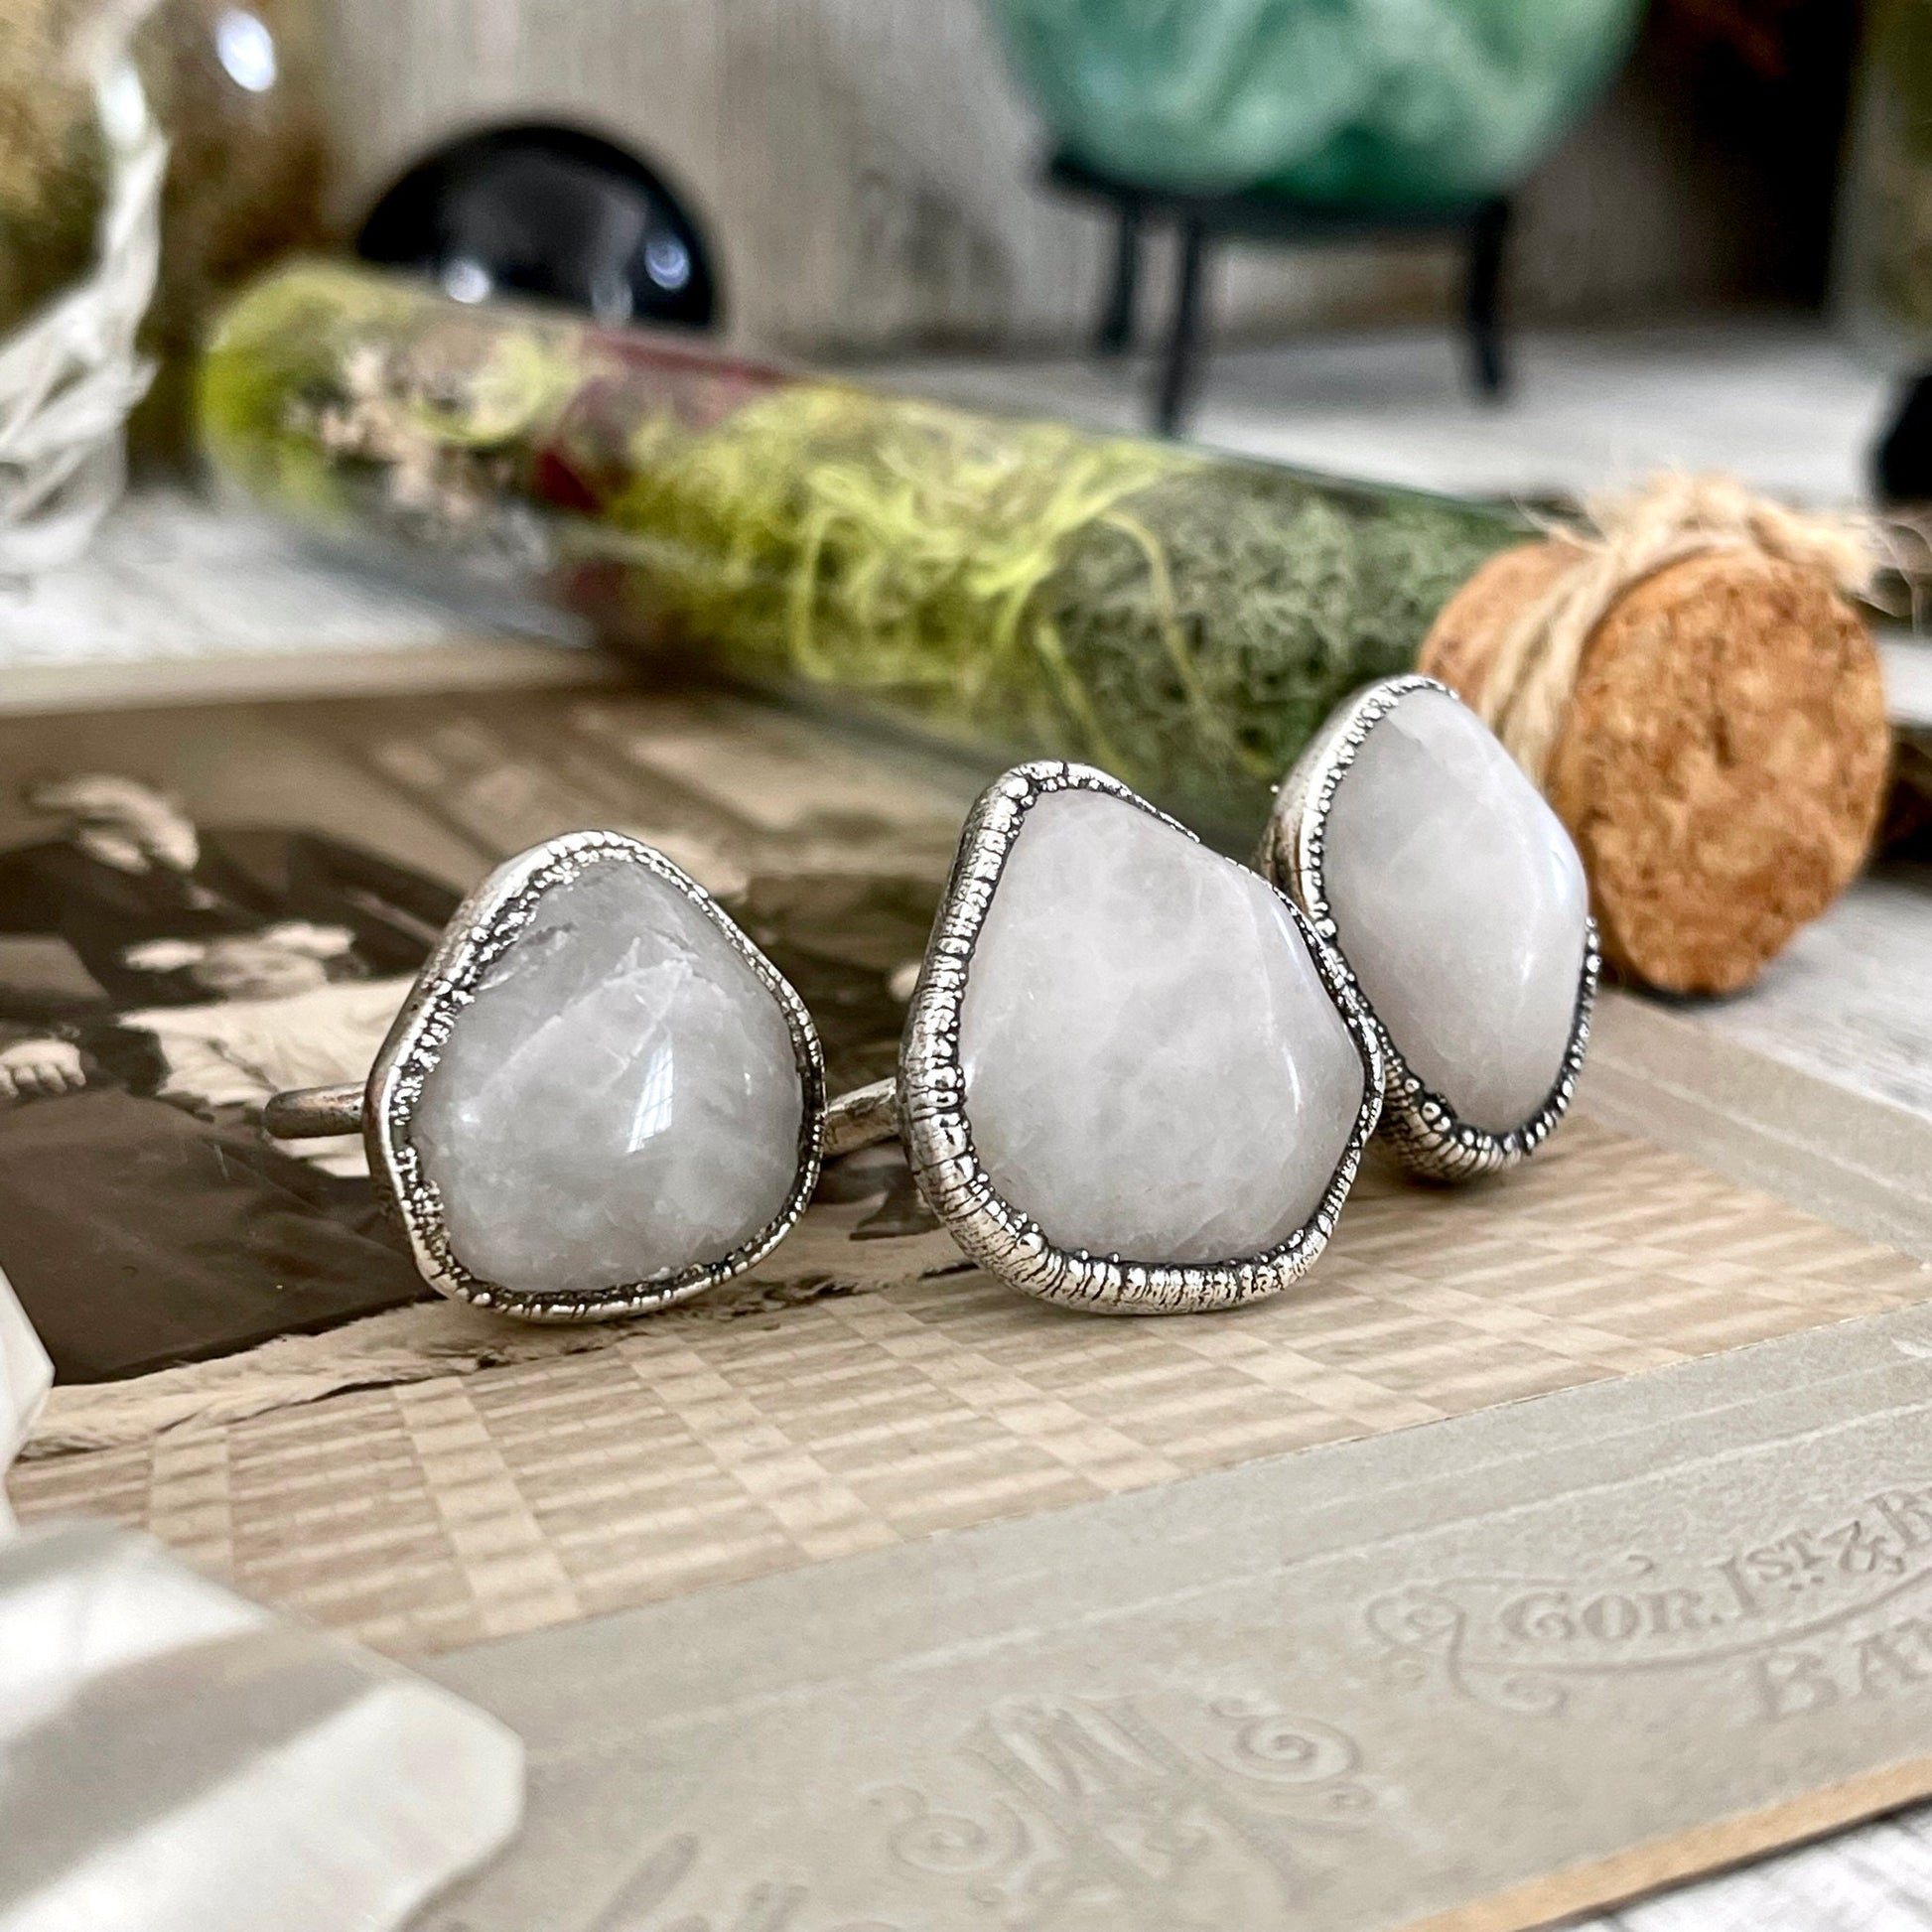 Rose Quartz Small Stone Ring in Fine Silver Size 5 6 7 8 9 10 / Foxlark Collection